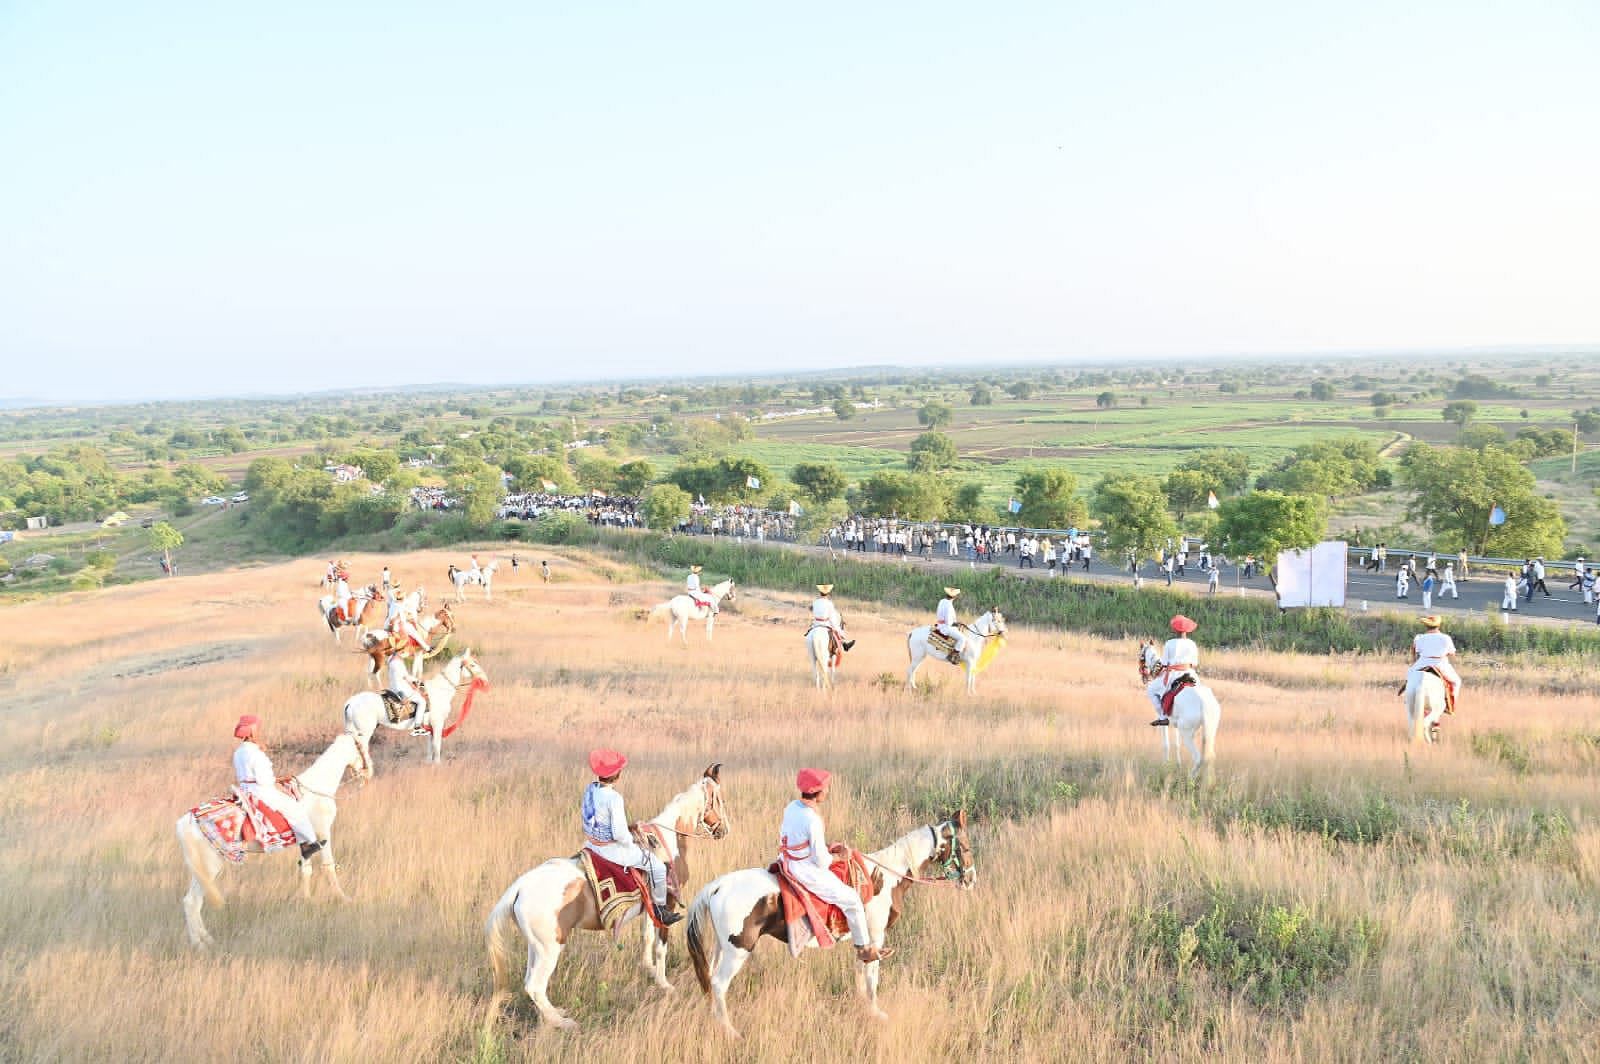 Vilas Patil and his fellow horsemen waiting for Rahul Gandhi dressed up like Shivaji's soldiers | Purva Chitnis